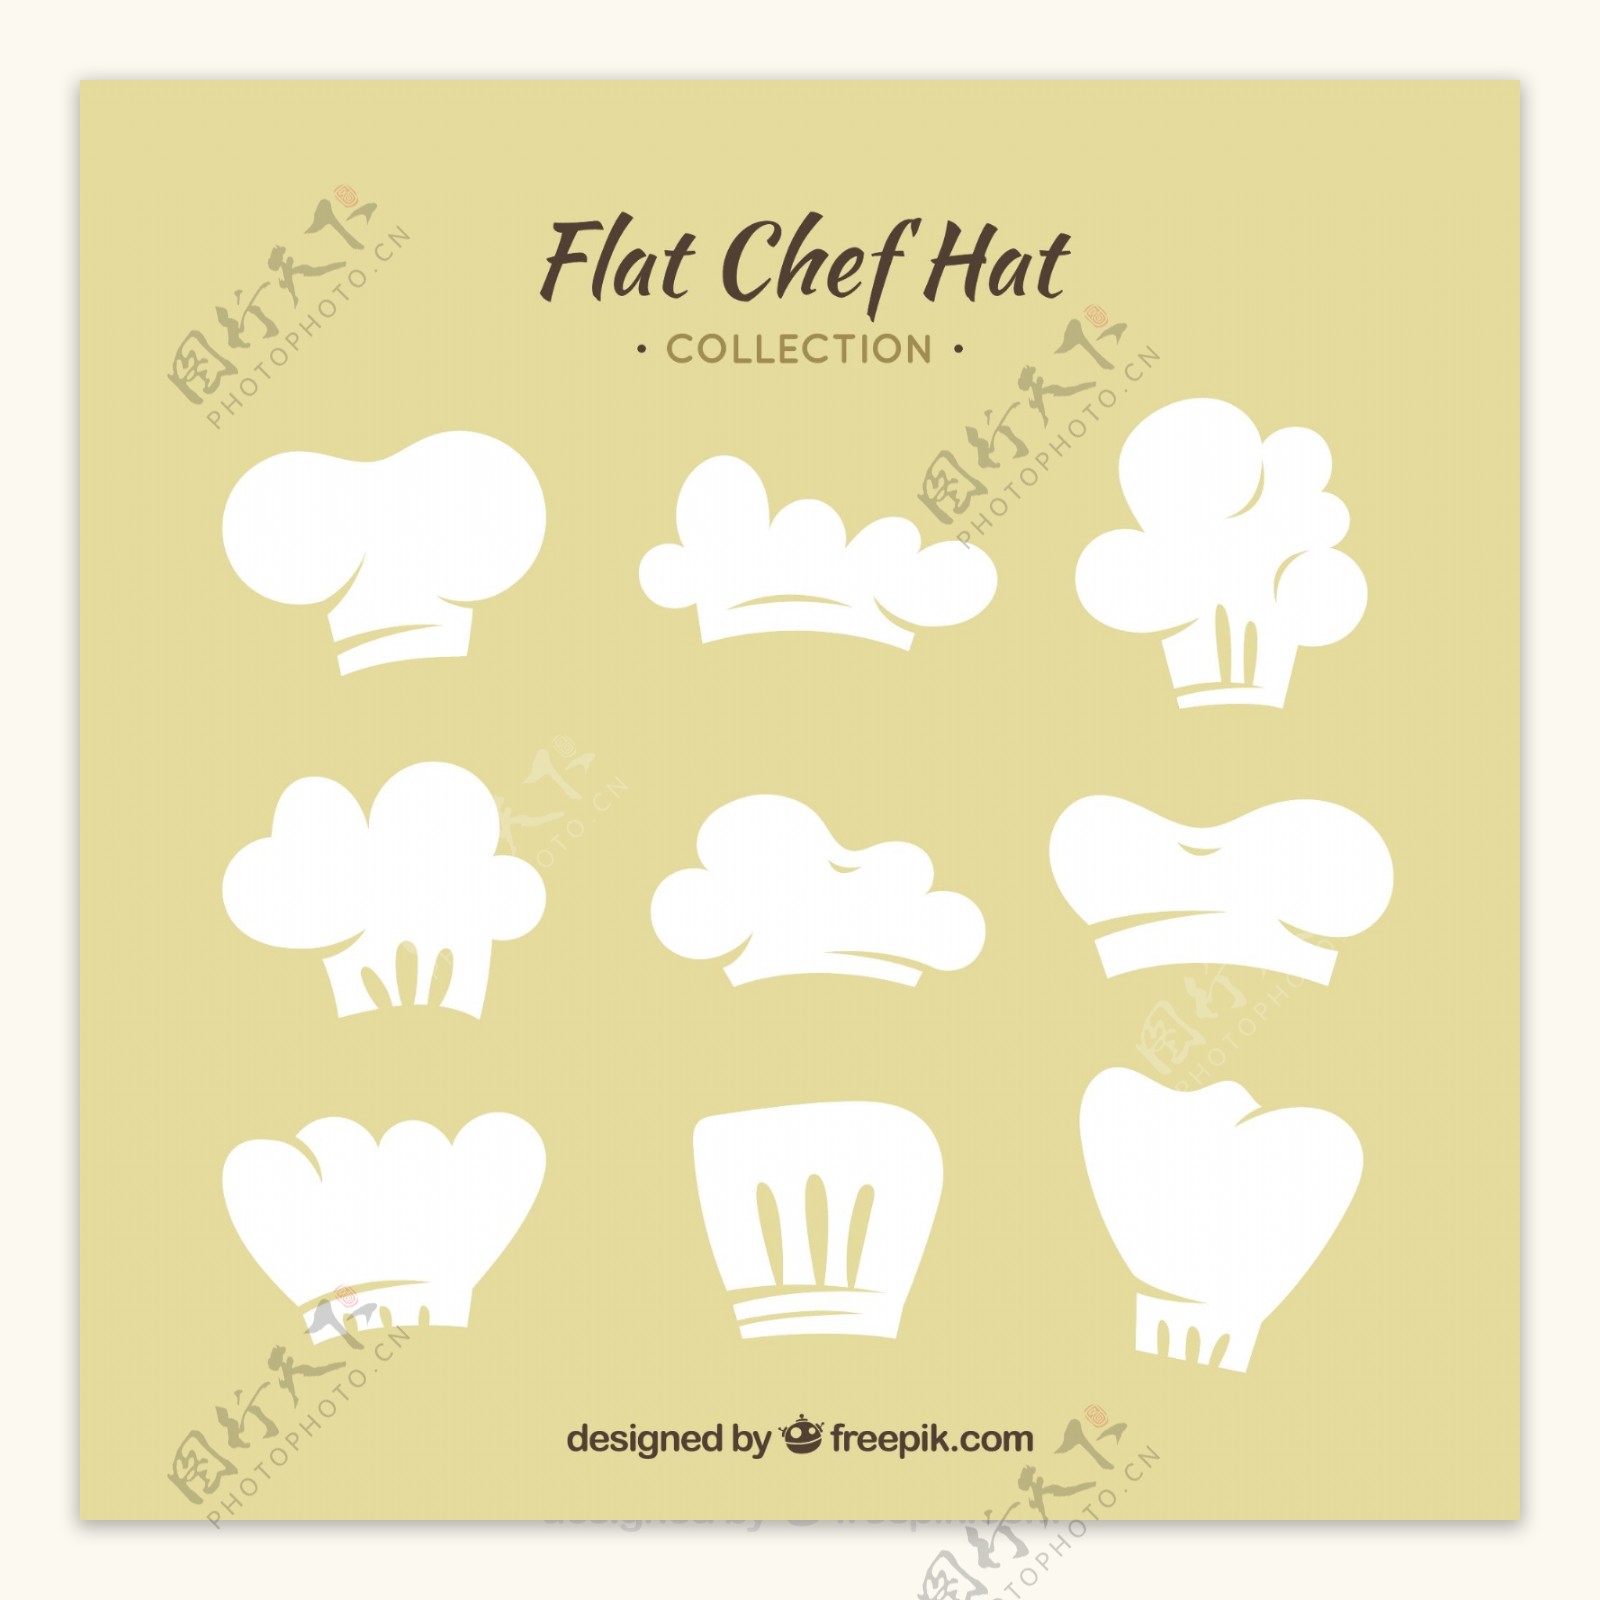 扁平风格白色厨师帽矢量素材